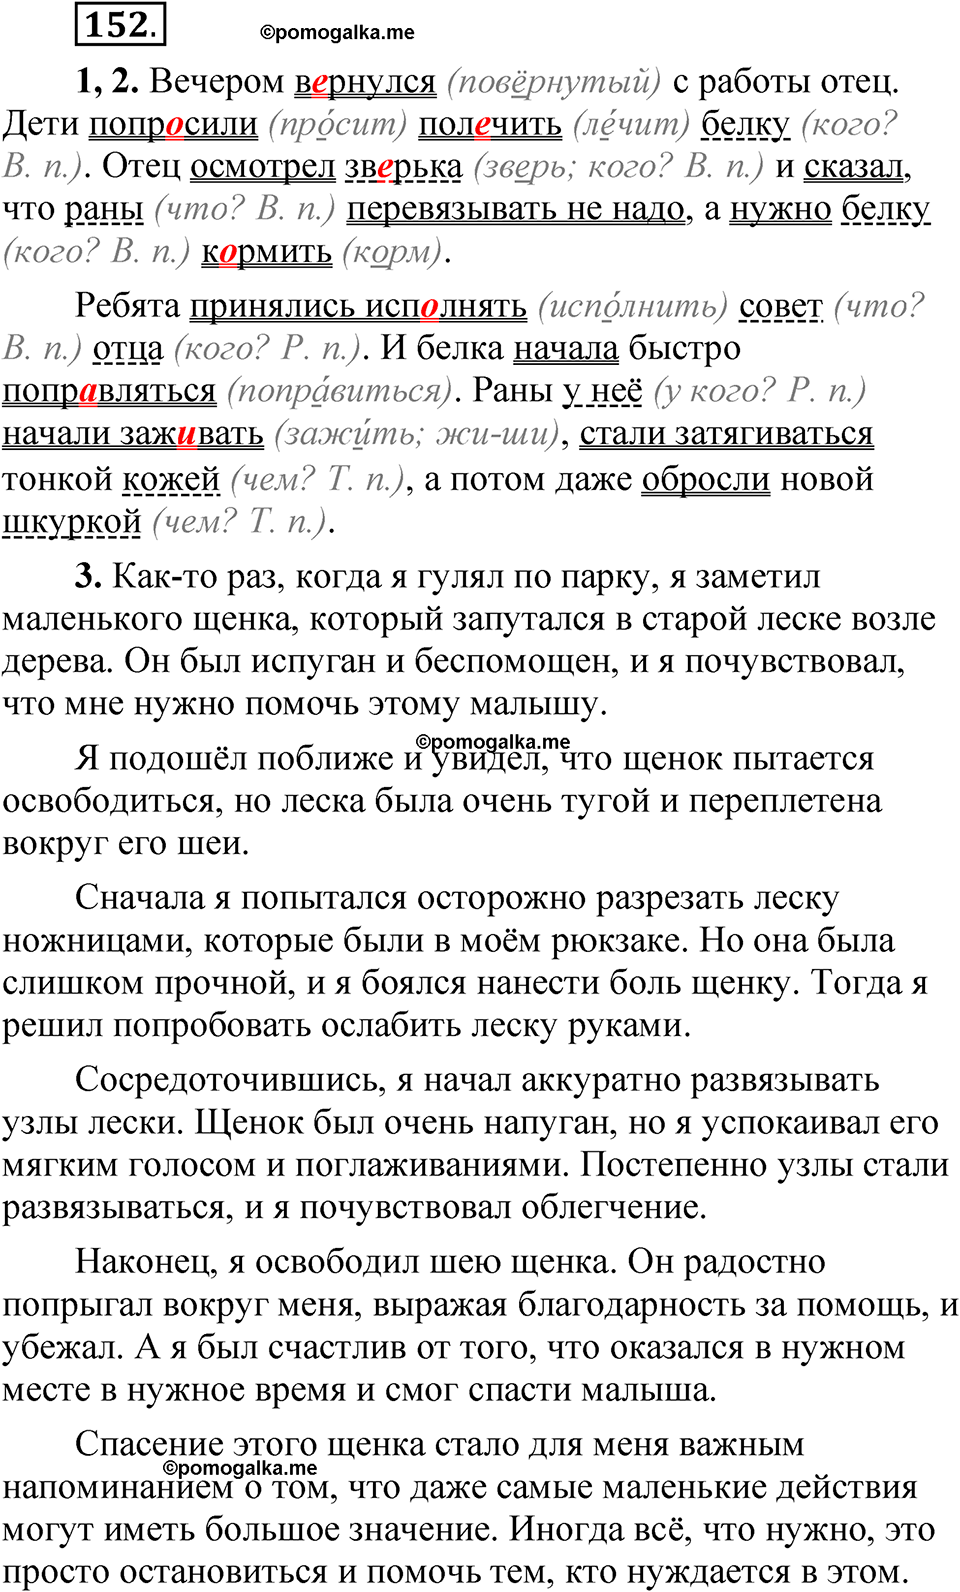 страница 118 упражнение 152 русский язык 5 класс Быстрова, Кибирева 1 часть 2021 год